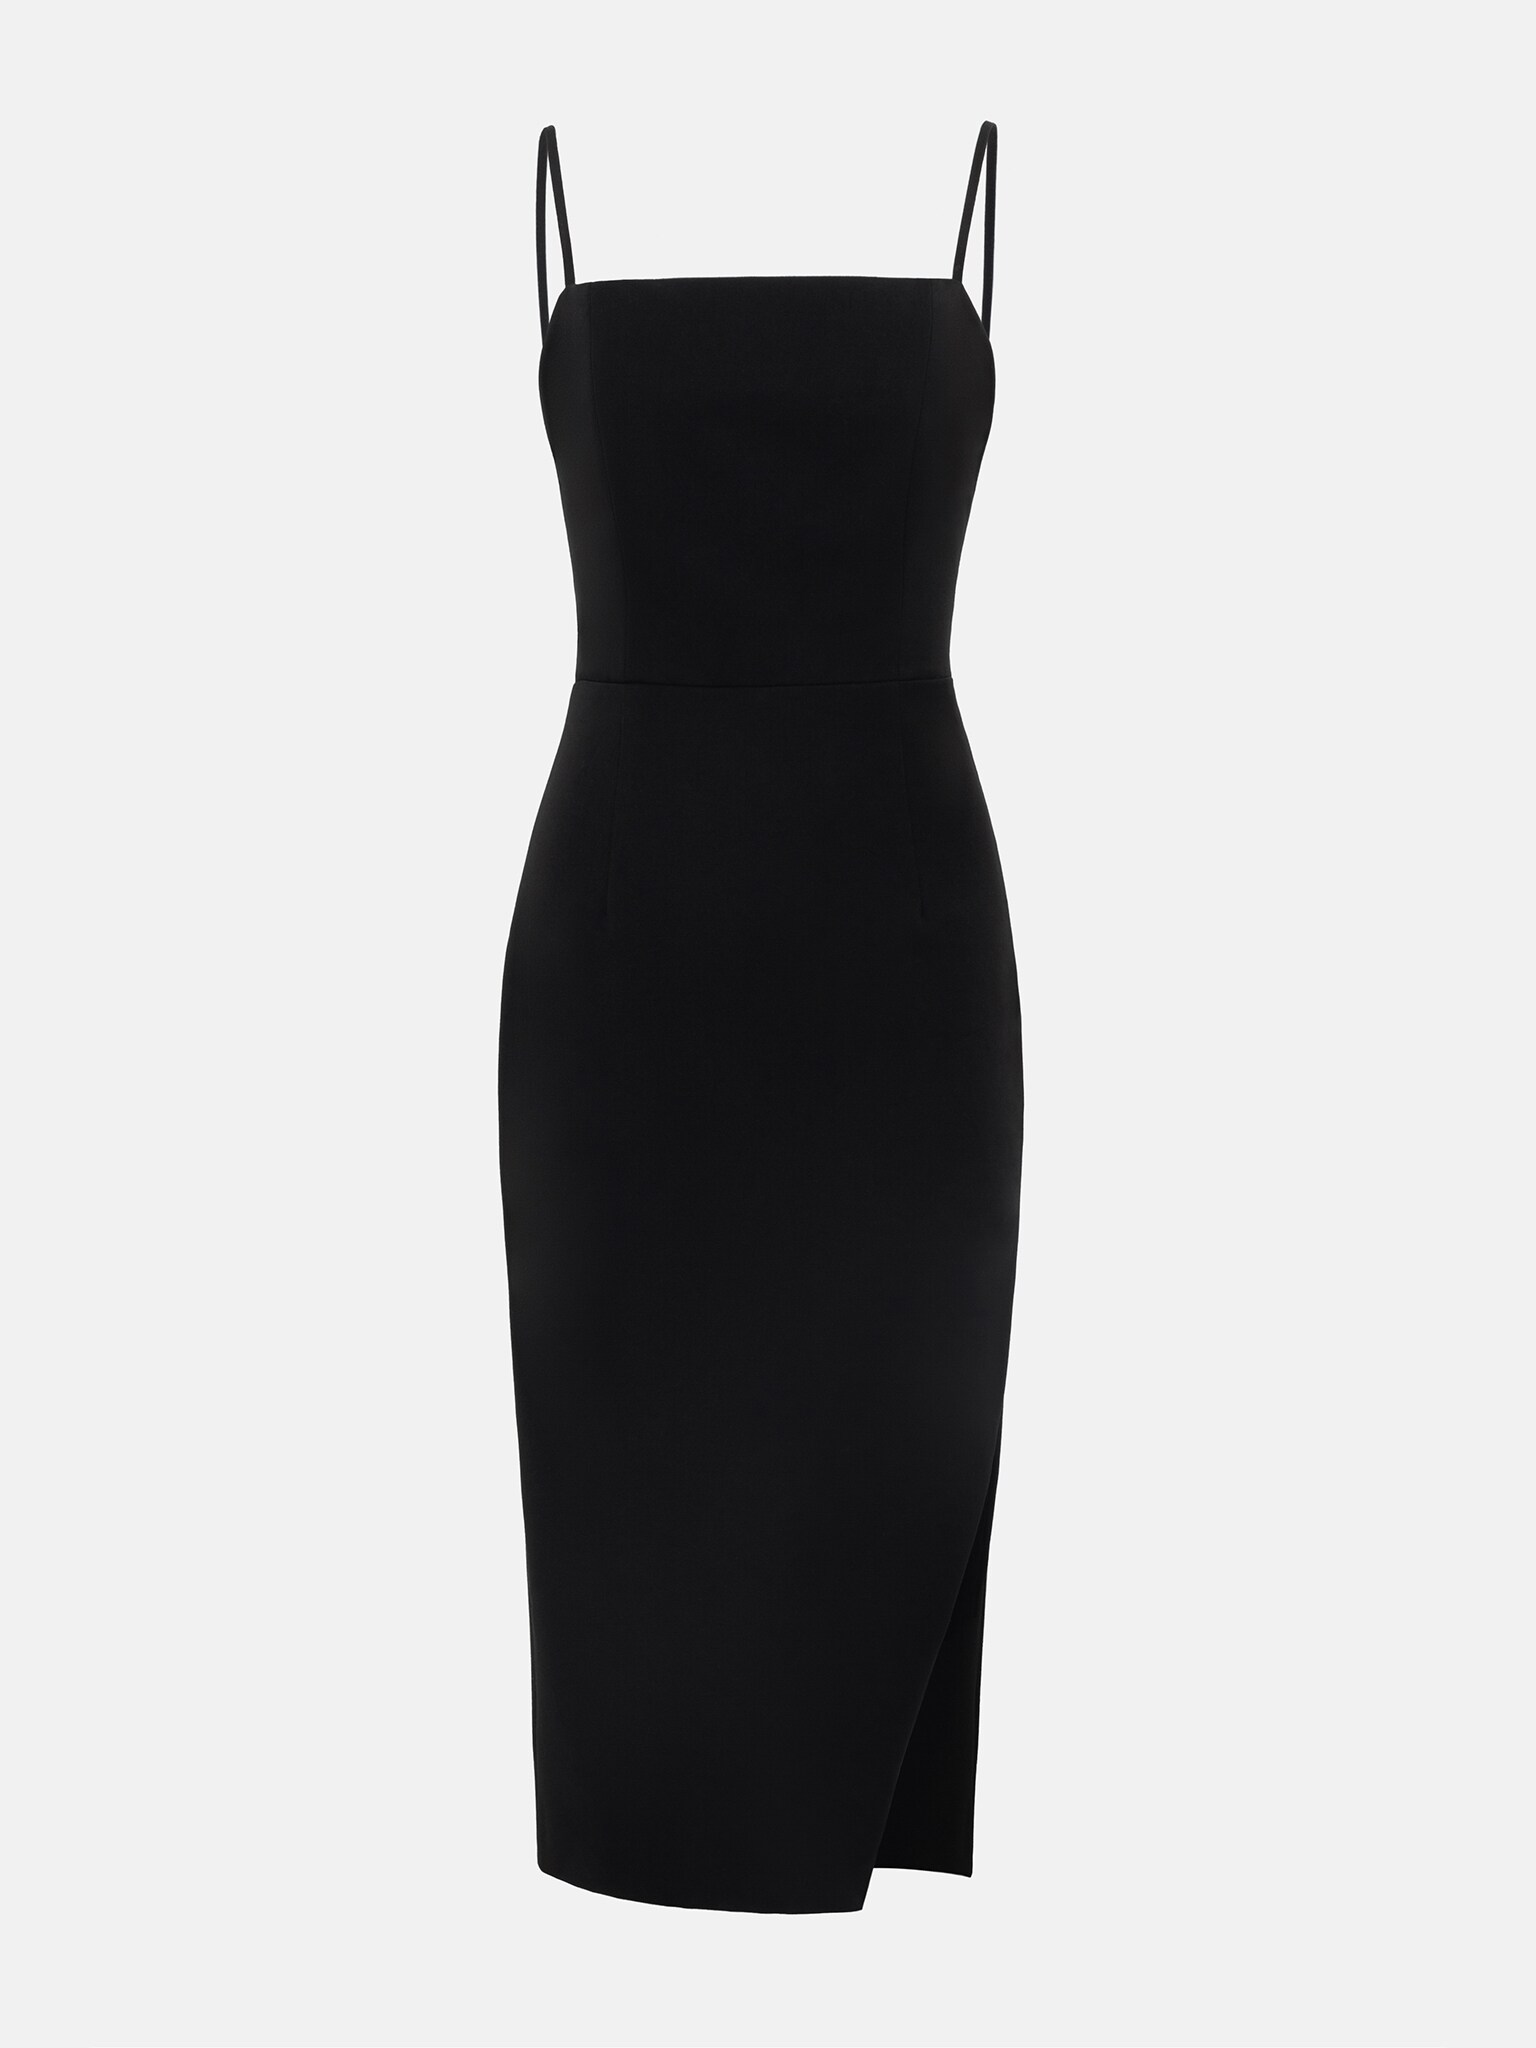 Corset tie-back bodycon midi dress :: LICHI - Online fashion store